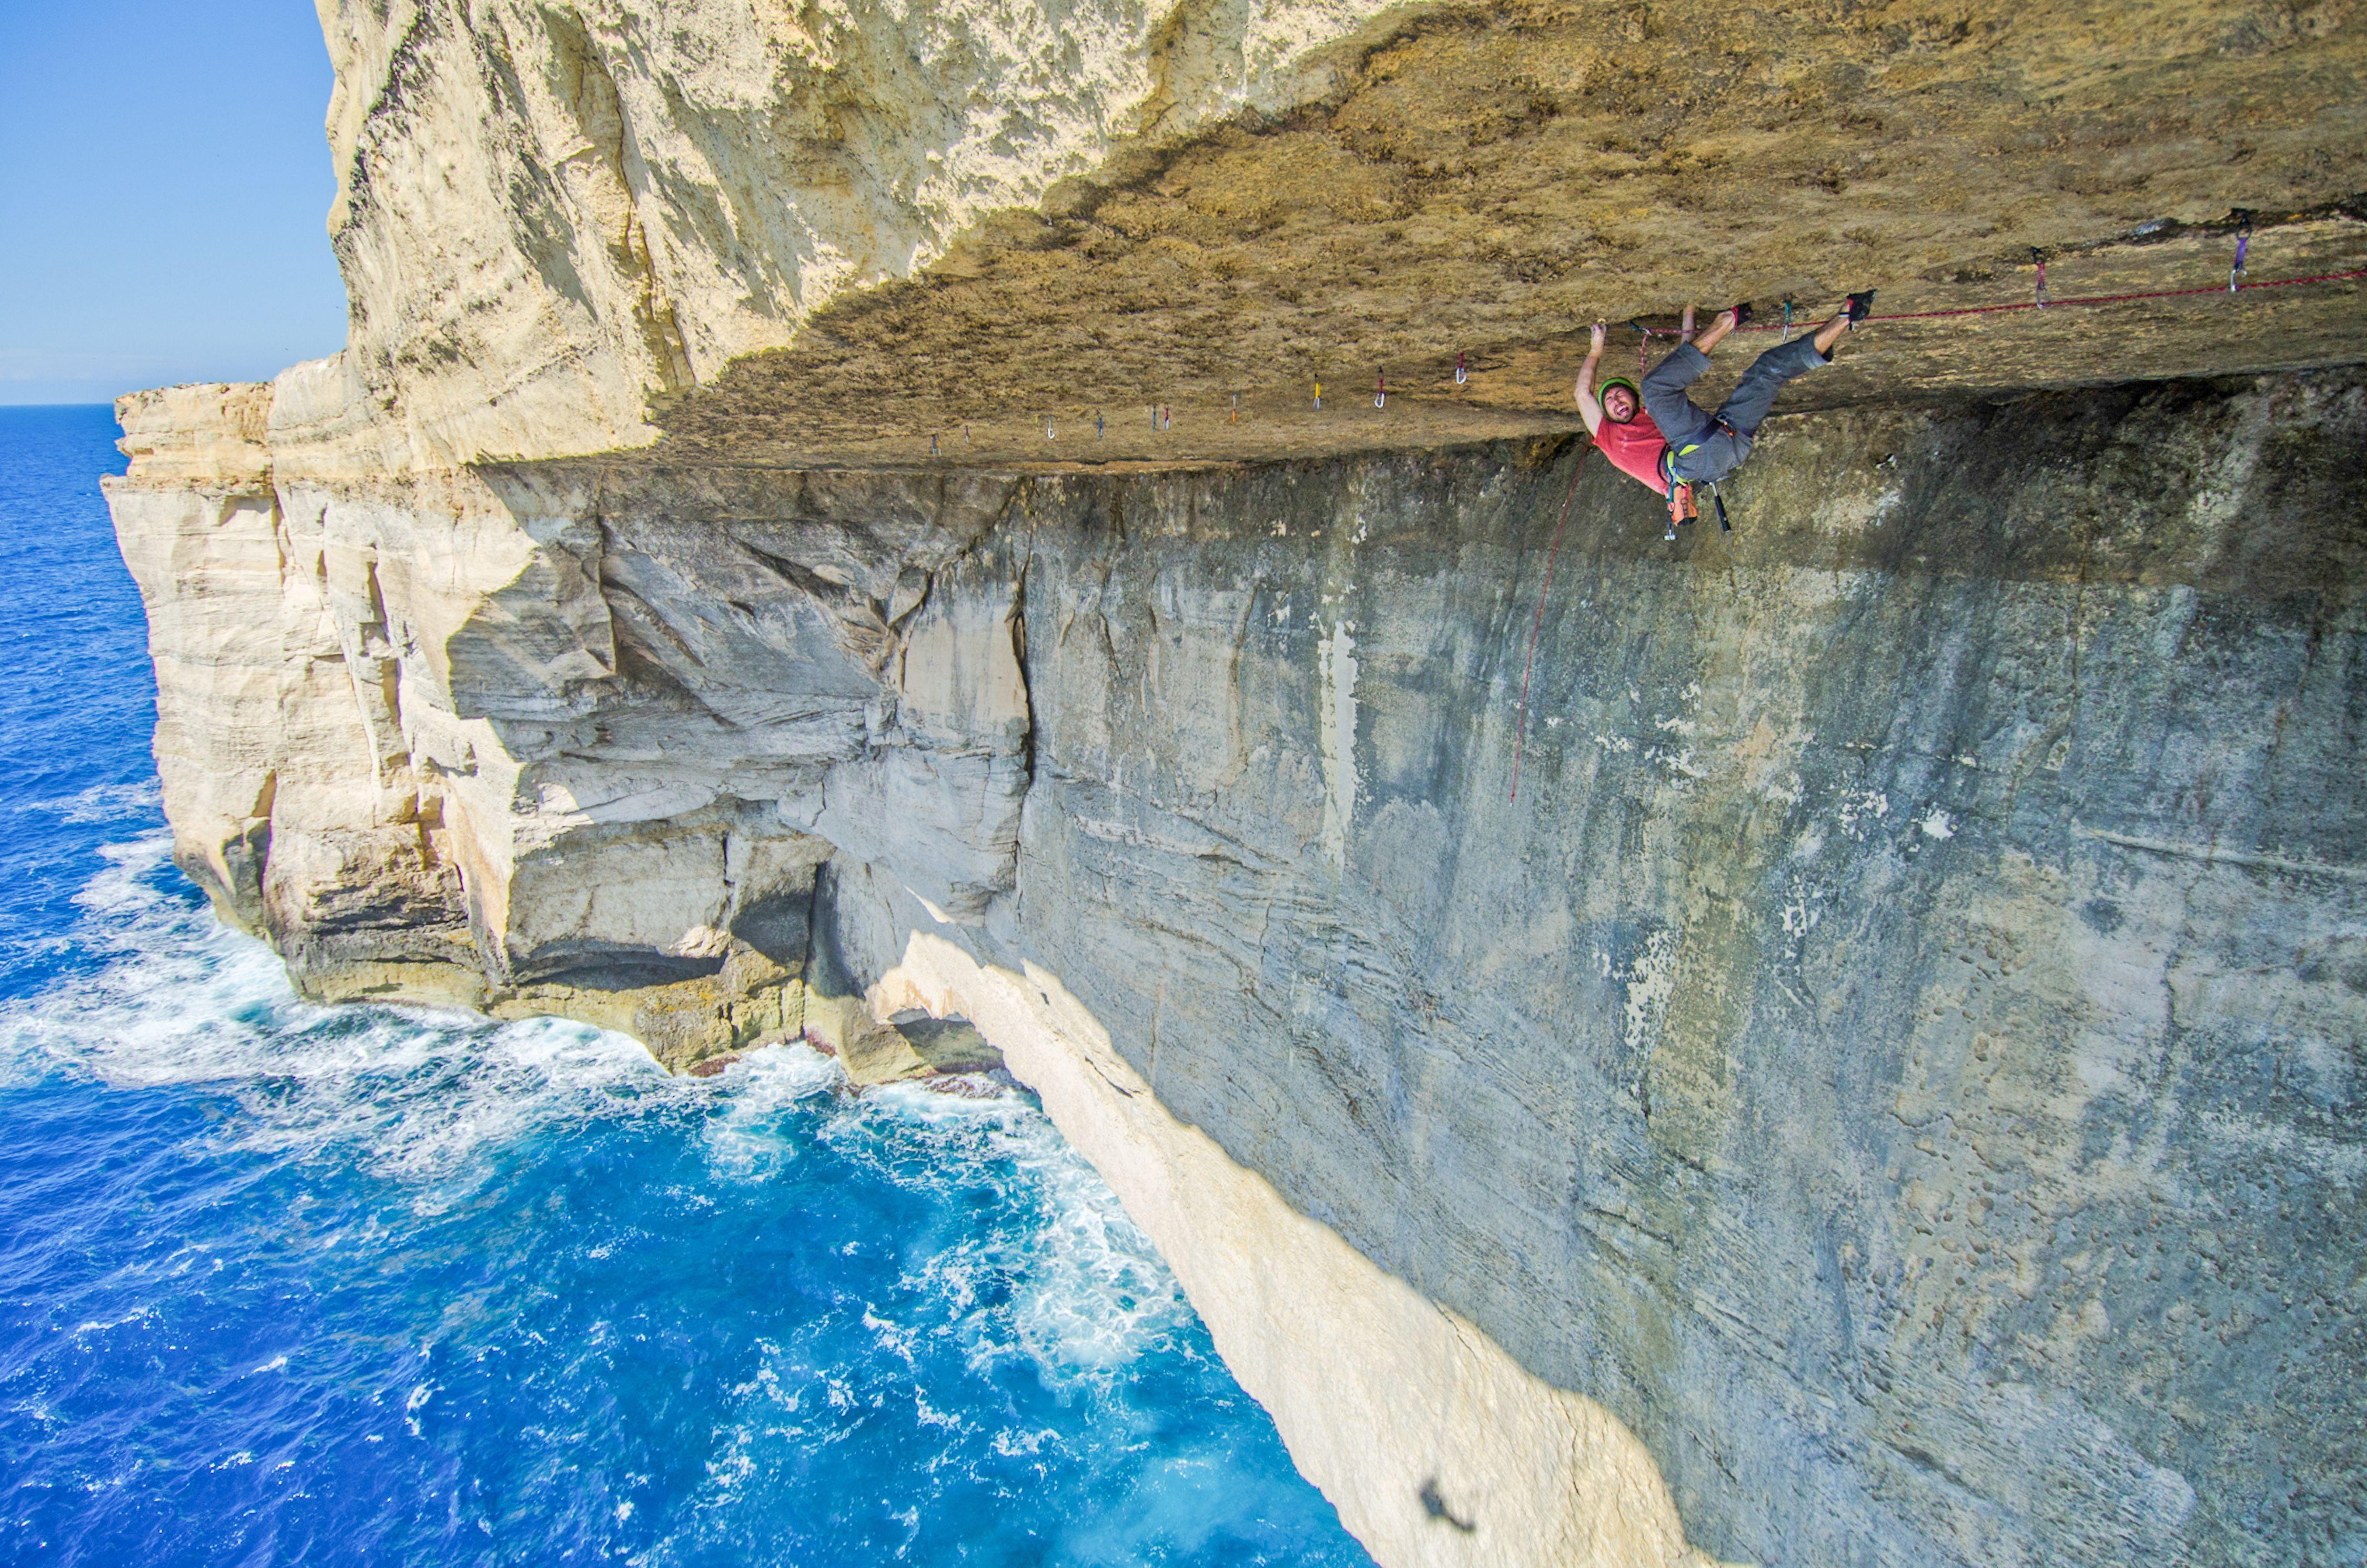 Sea Cave, Malta Wallpaper Image Photo Picture Background